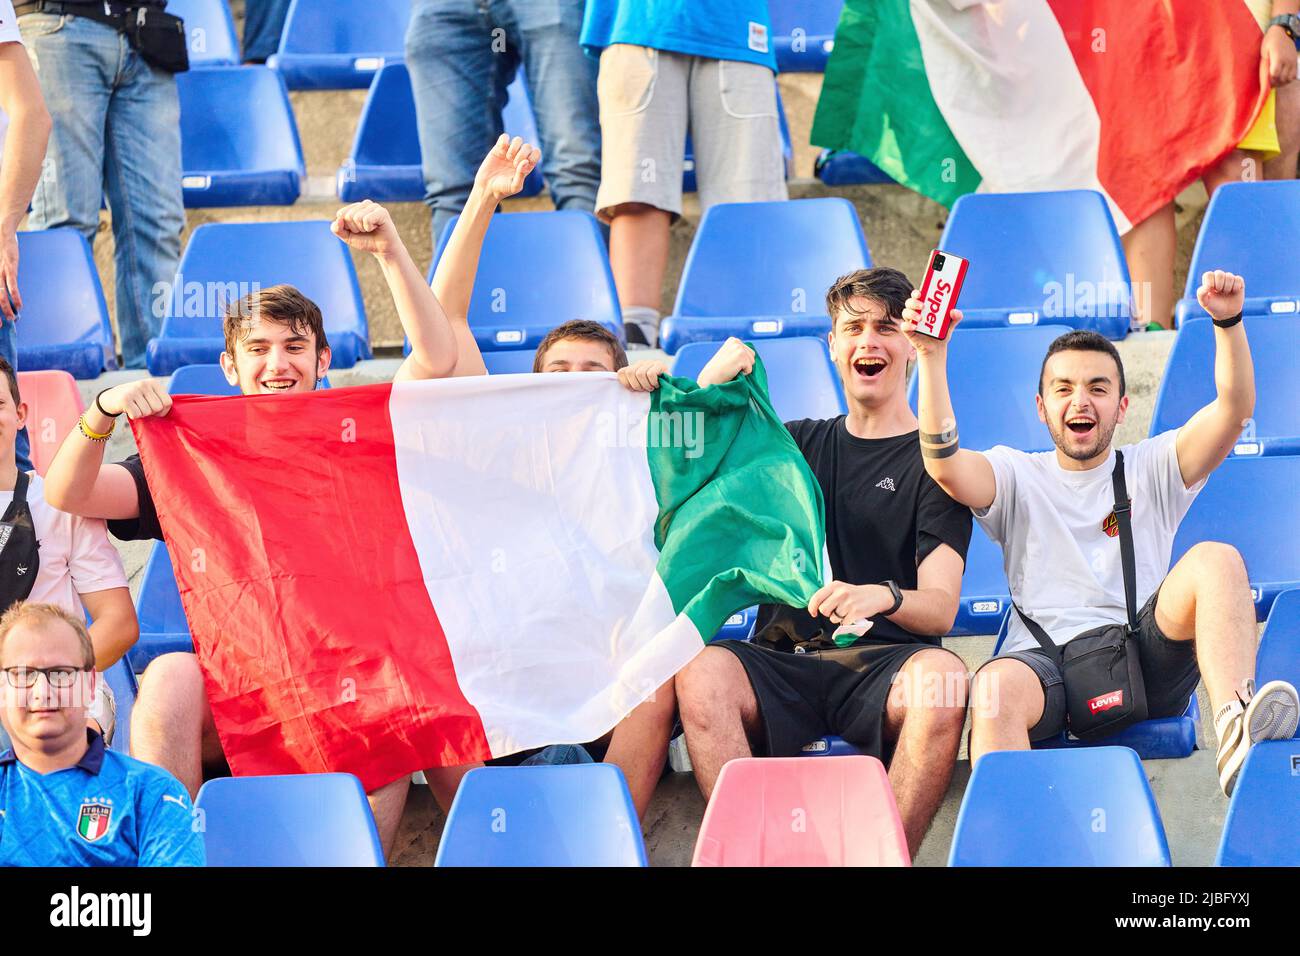 DFB e ITA tifosi della UEFA Nations League 2022 partita ITALIA - GERMANIA 1-1 nella stagione 2022/2023 giugno 04, 2022 a Bologna, Italia. © Peter Schatz / Alamy Live News Foto Stock